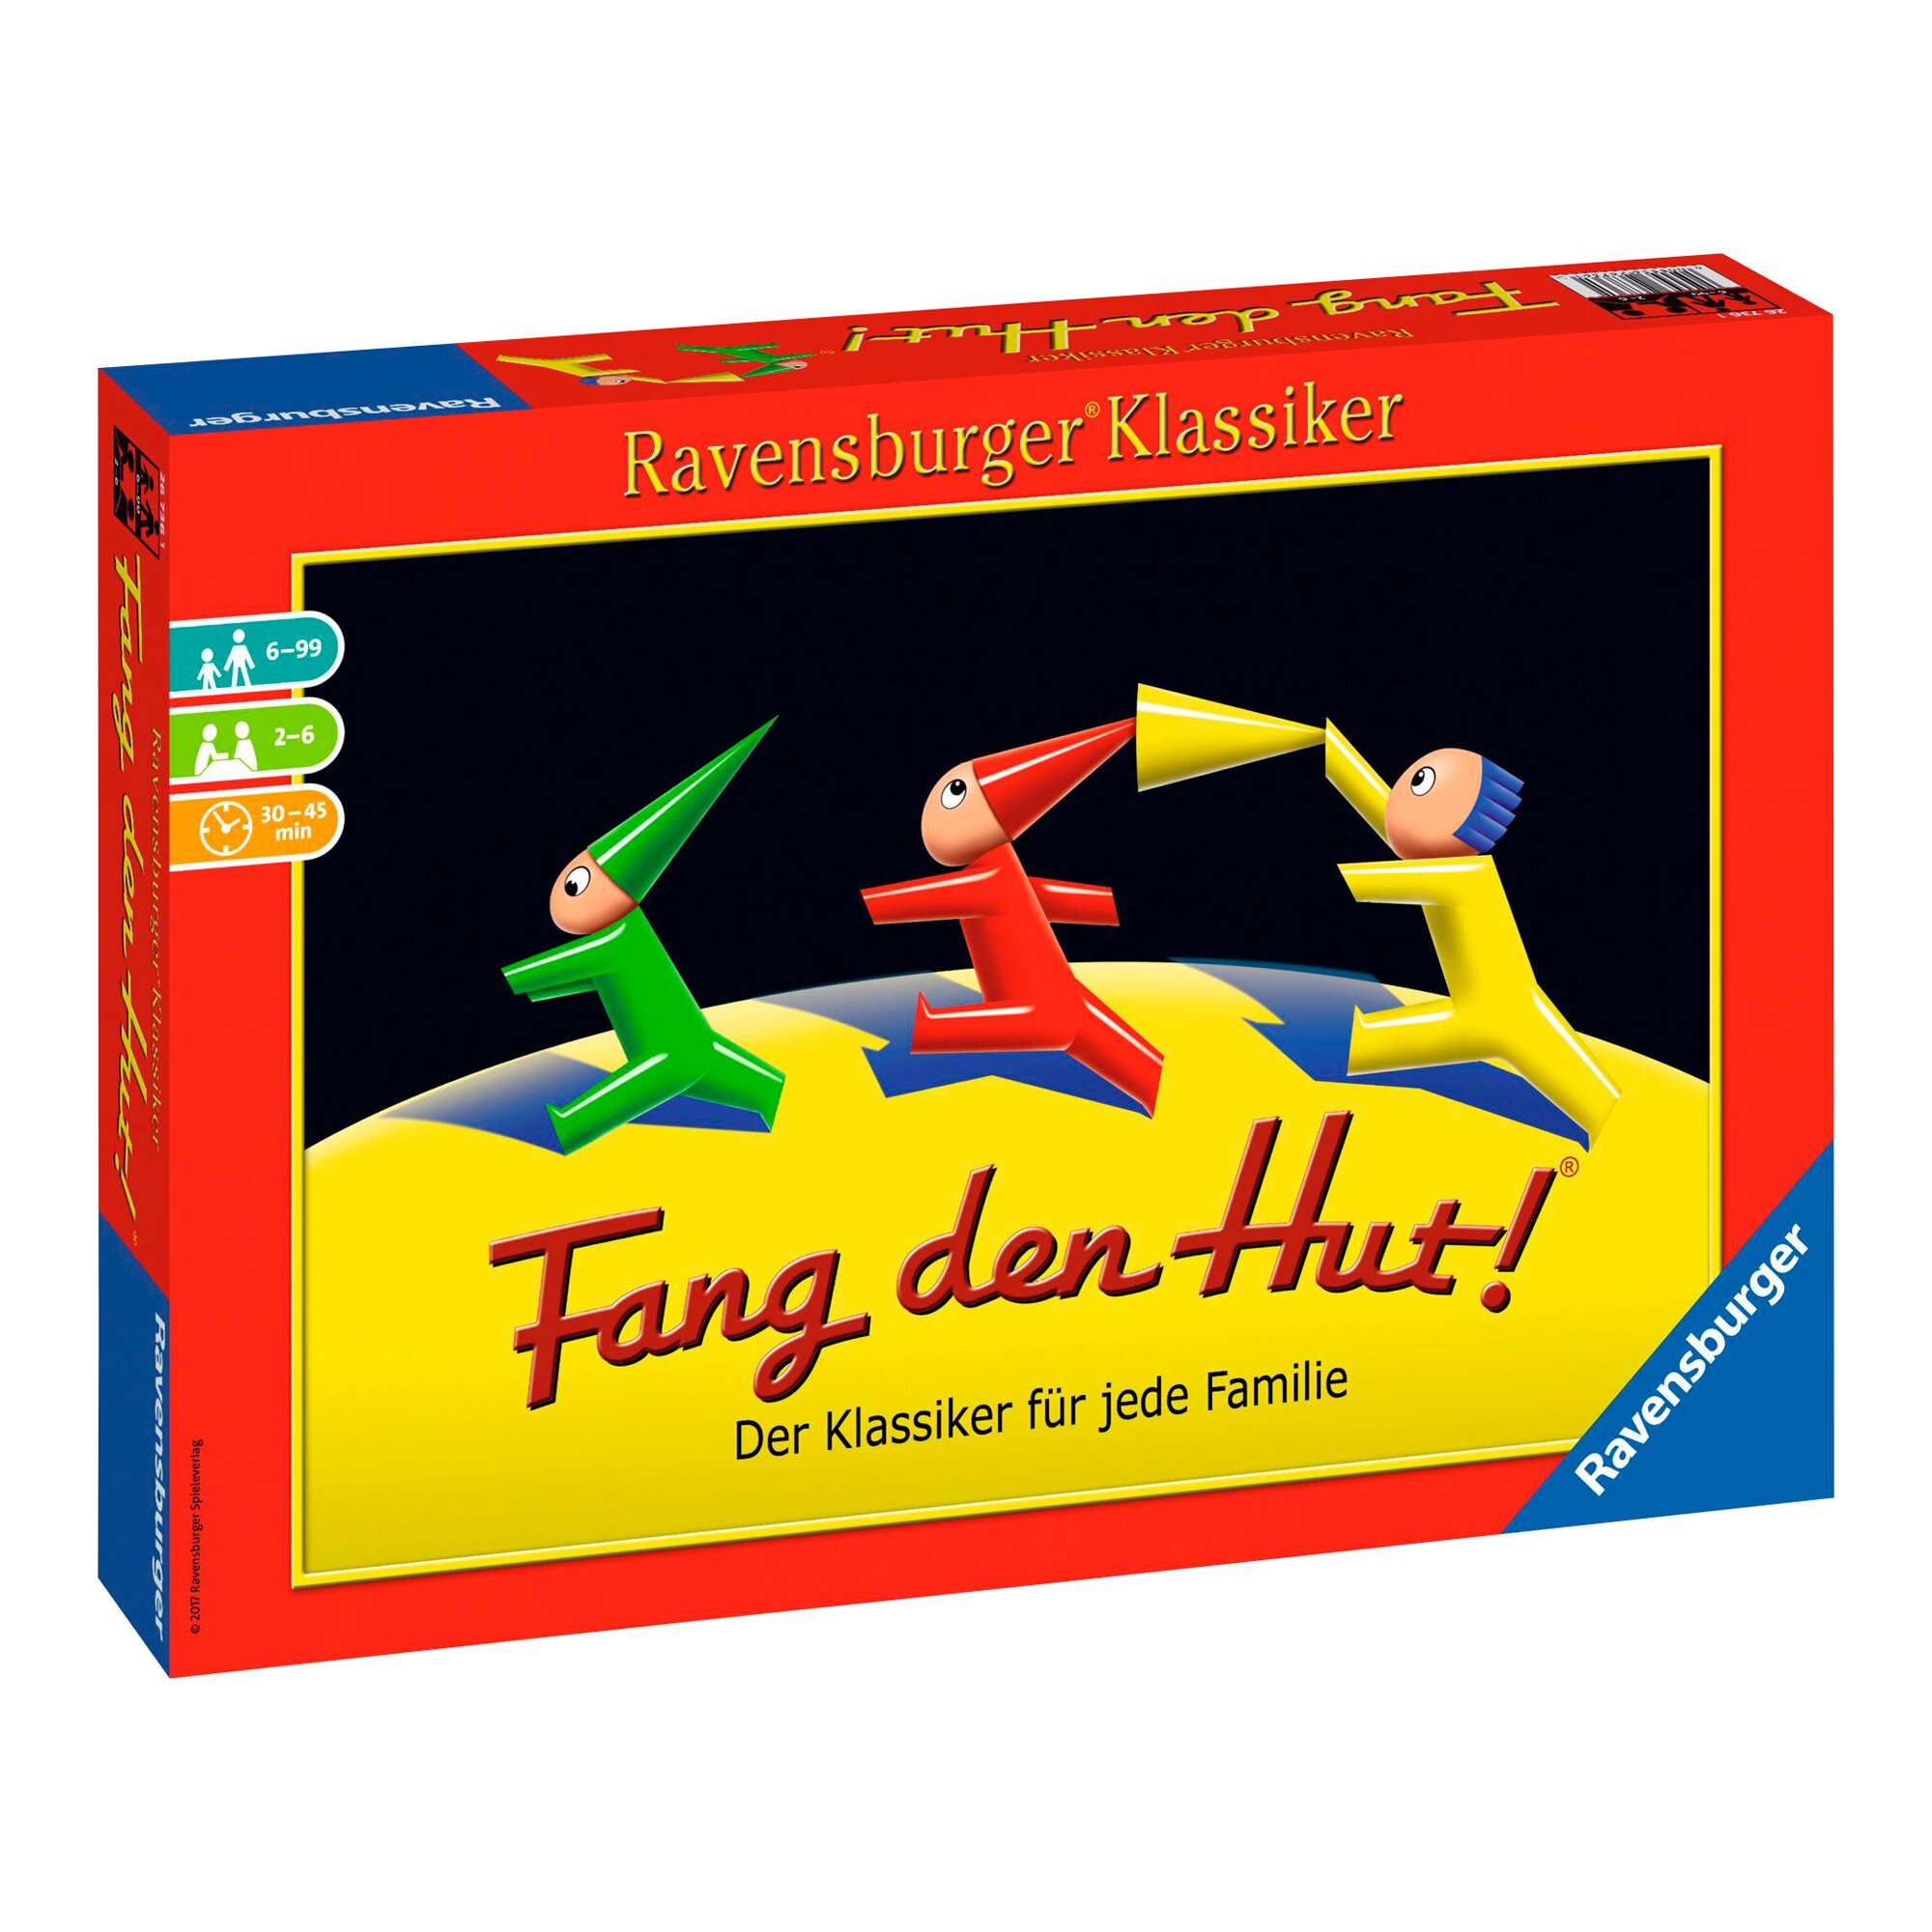 Image of Brettspiel "Fang den Hut!"